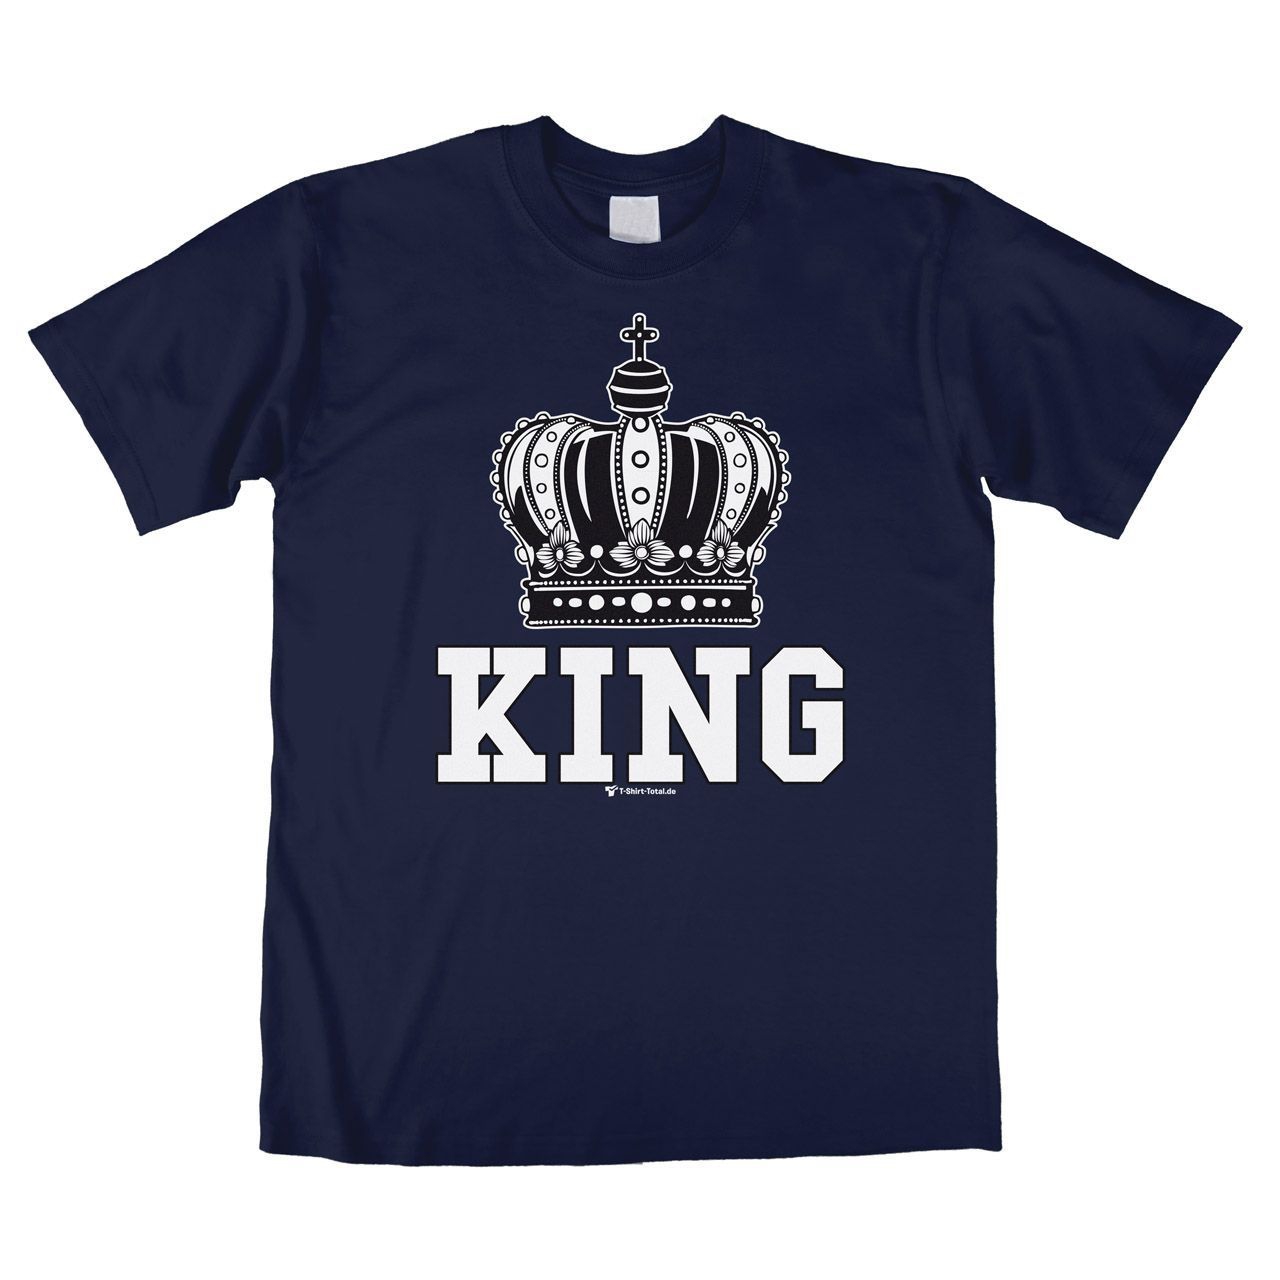 King Unisex T-Shirt navy Large